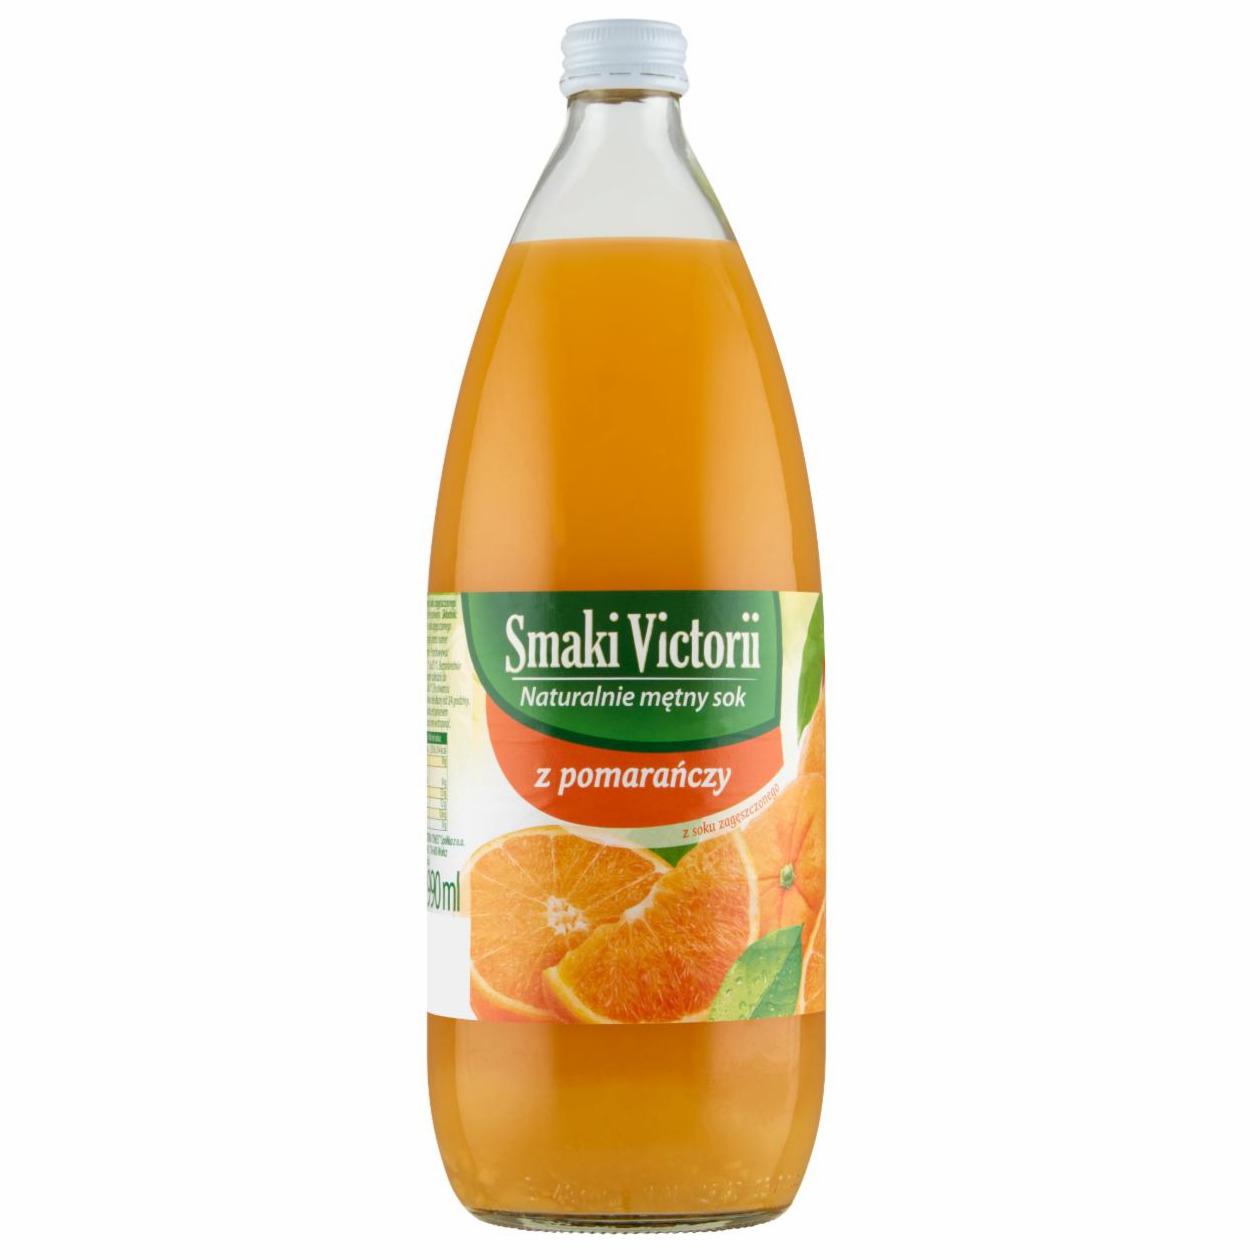 Zdjęcia - Smaki Victorii Naturalnie mętny sok z pomarańczy 990 ml